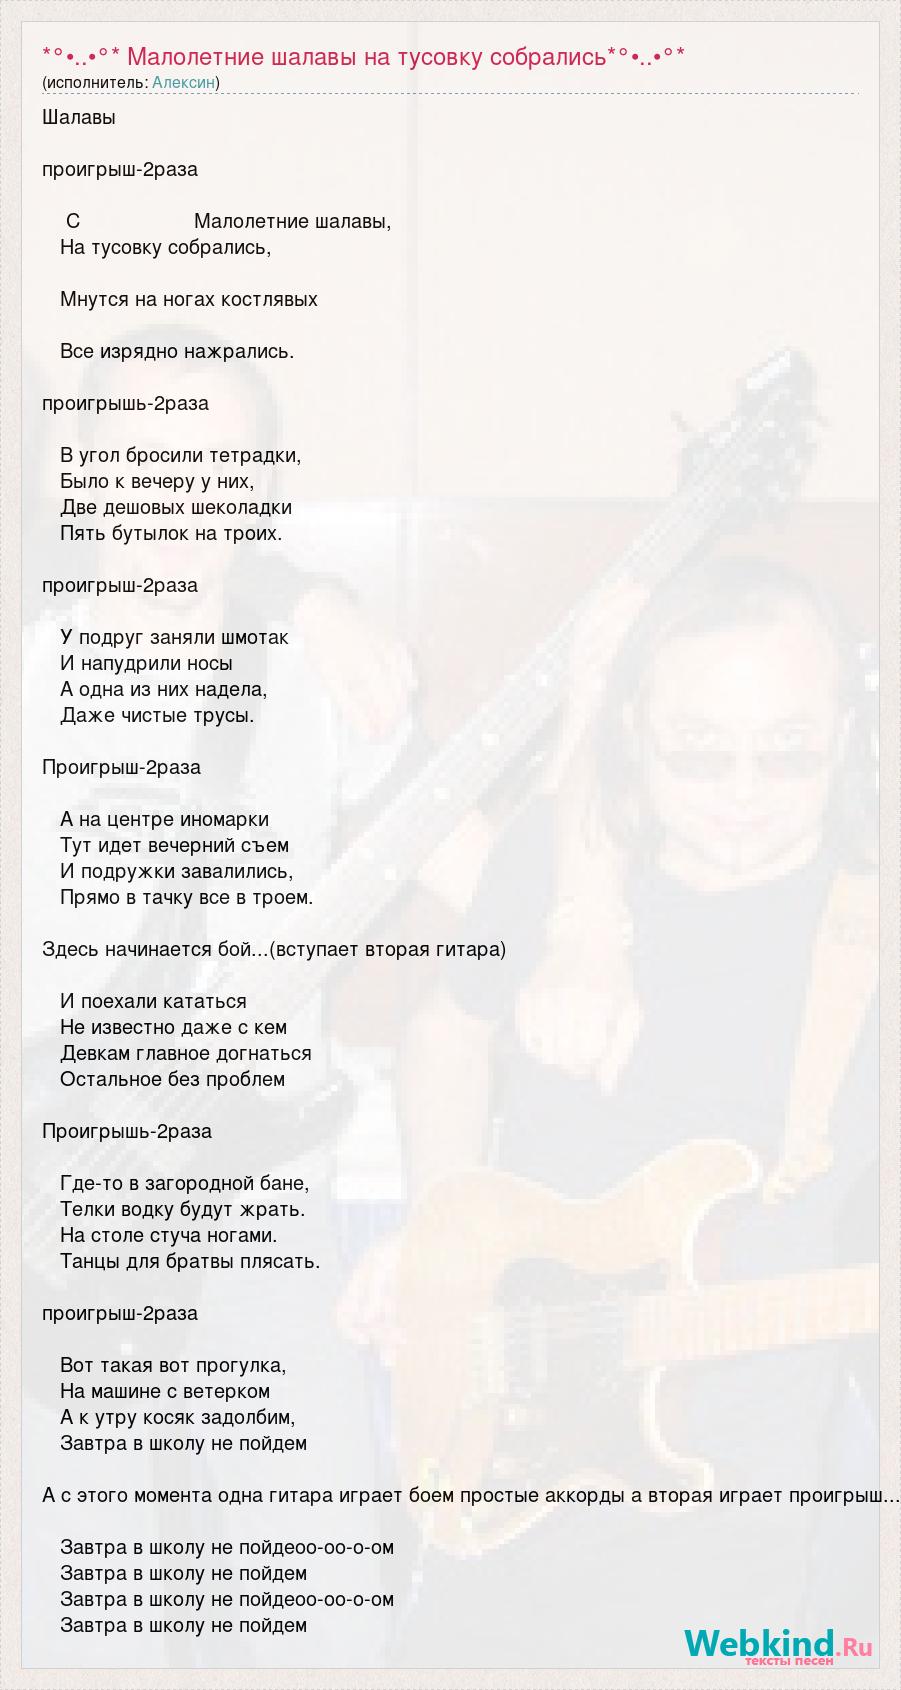 Алексин — Шалавы: аккорды для гитары